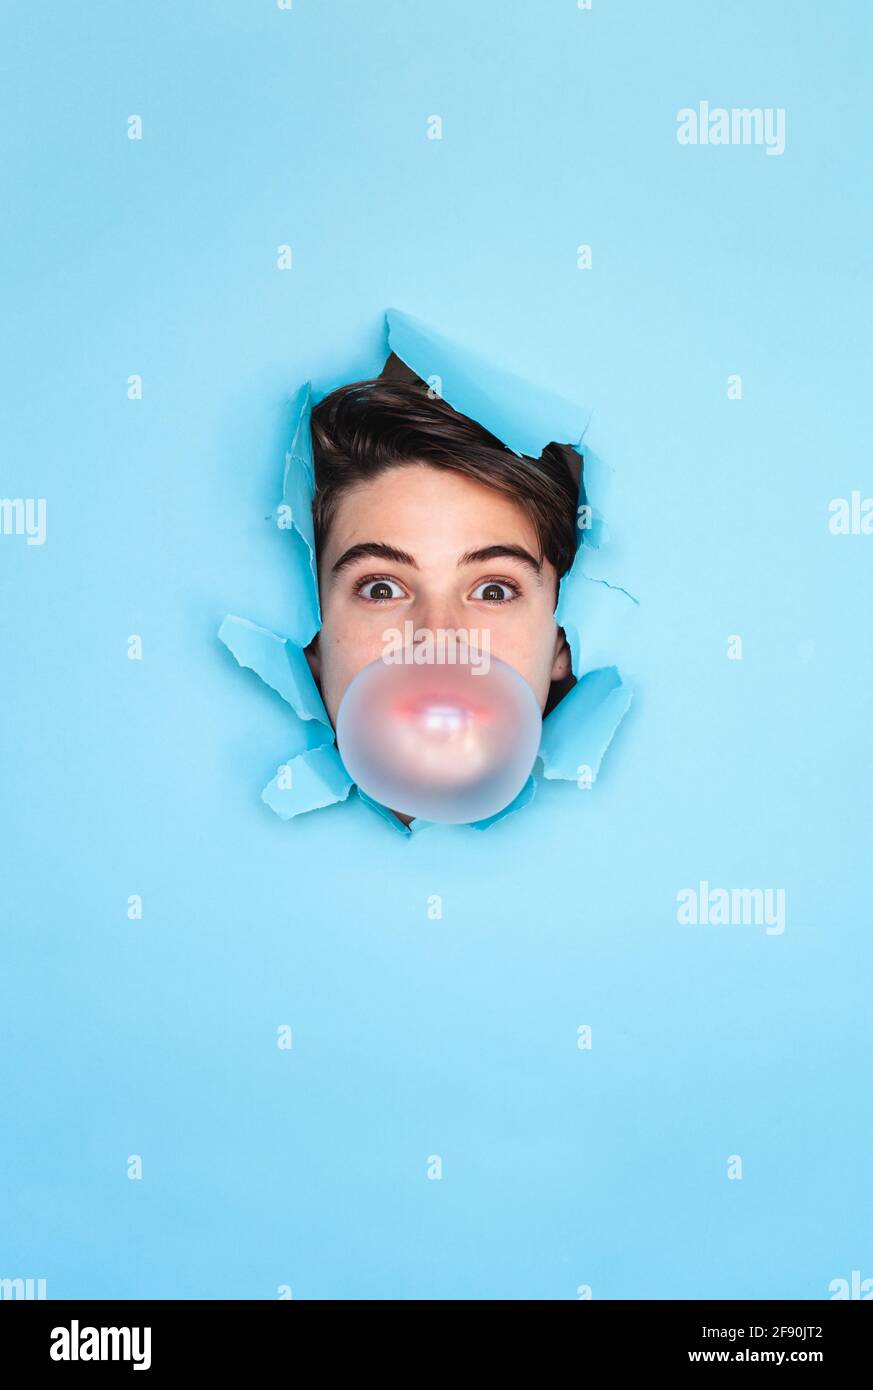 Junge Blase blasen mit Kopf durch Loch in blauem Papier Hintergrund. Stockfoto